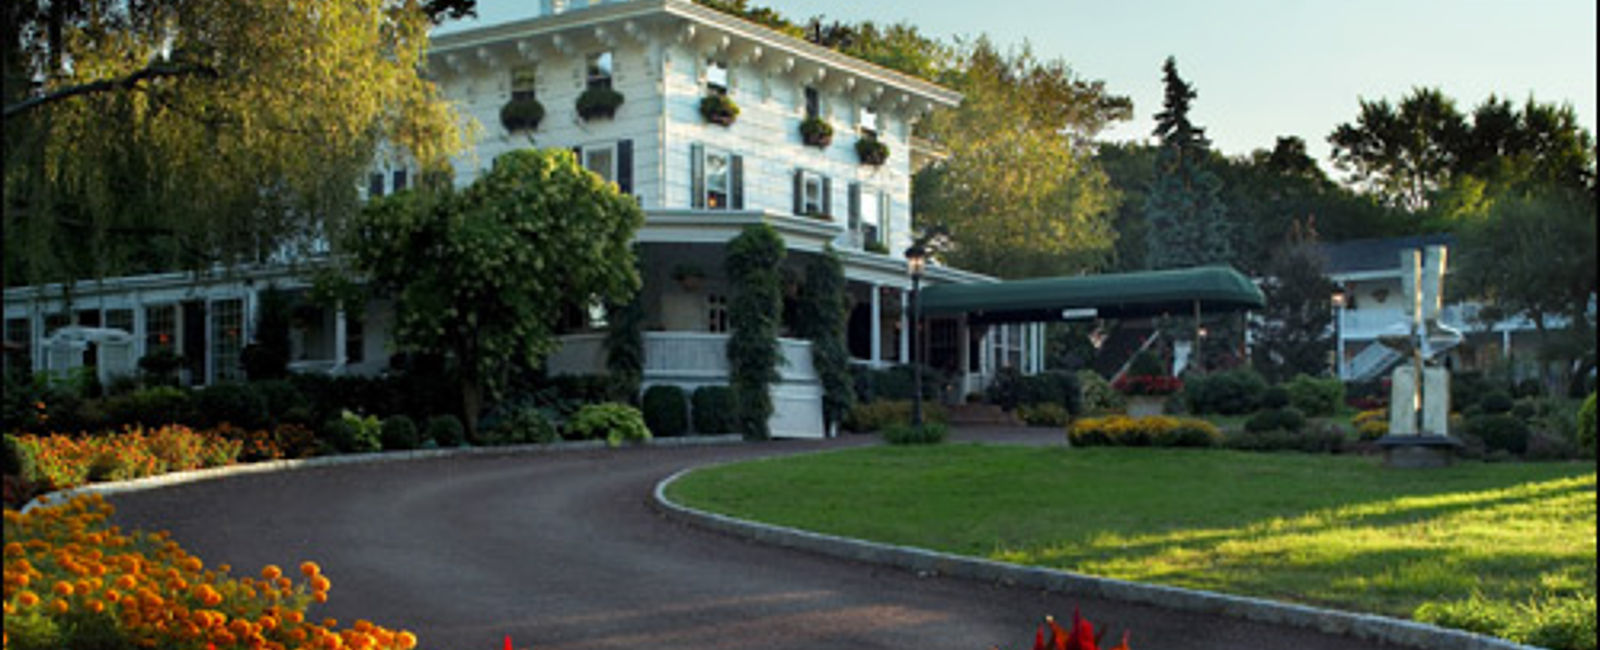 HOTEL TIPPS
 Homestead Inn 
 Kleines Luxus Hotel mit geschmackvollem Stilmix 